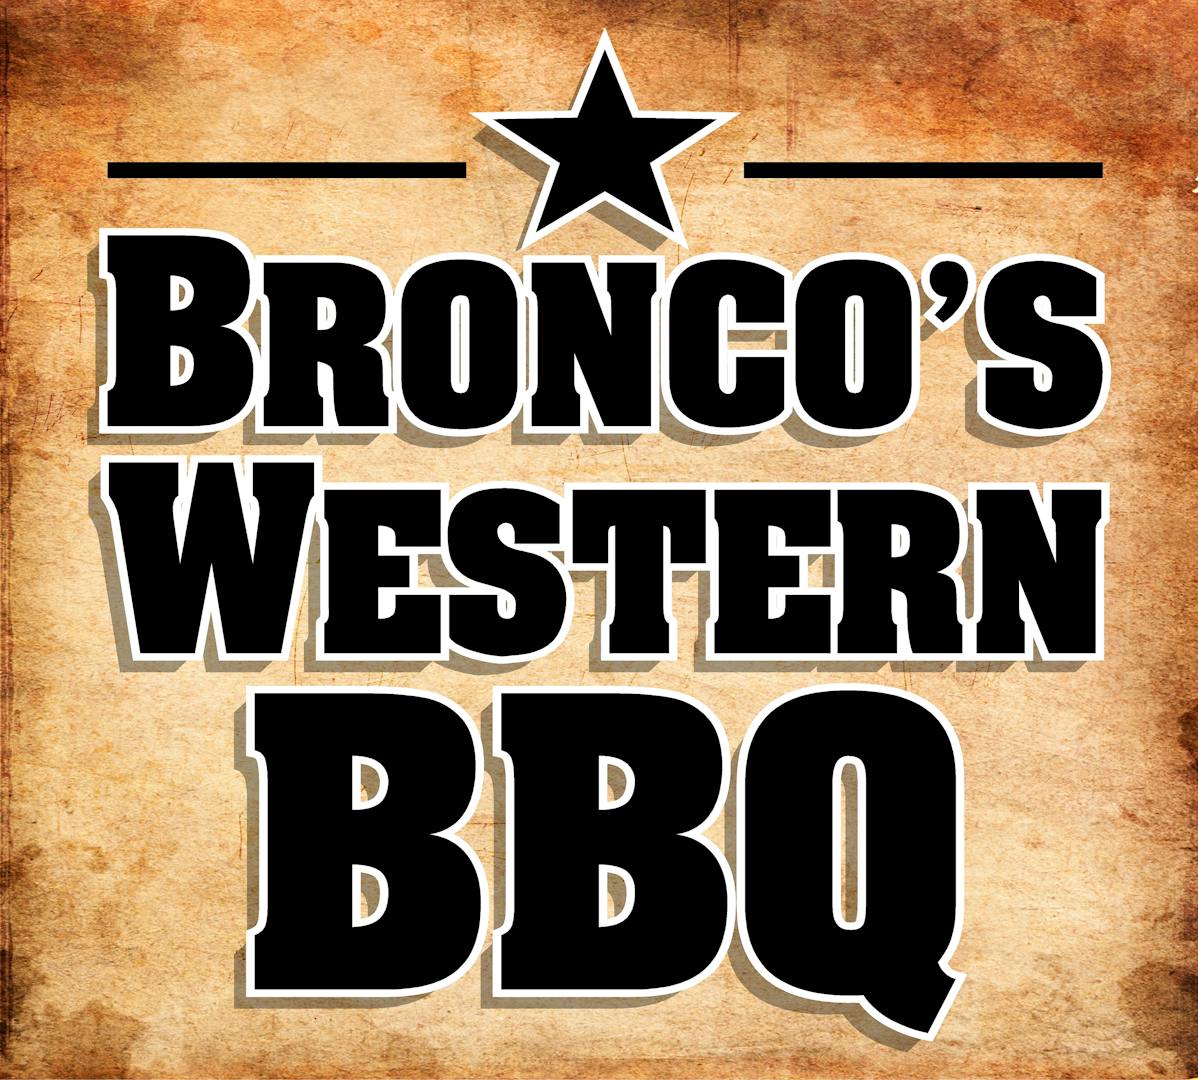 BRONCOS WESTERN BBQ LLC